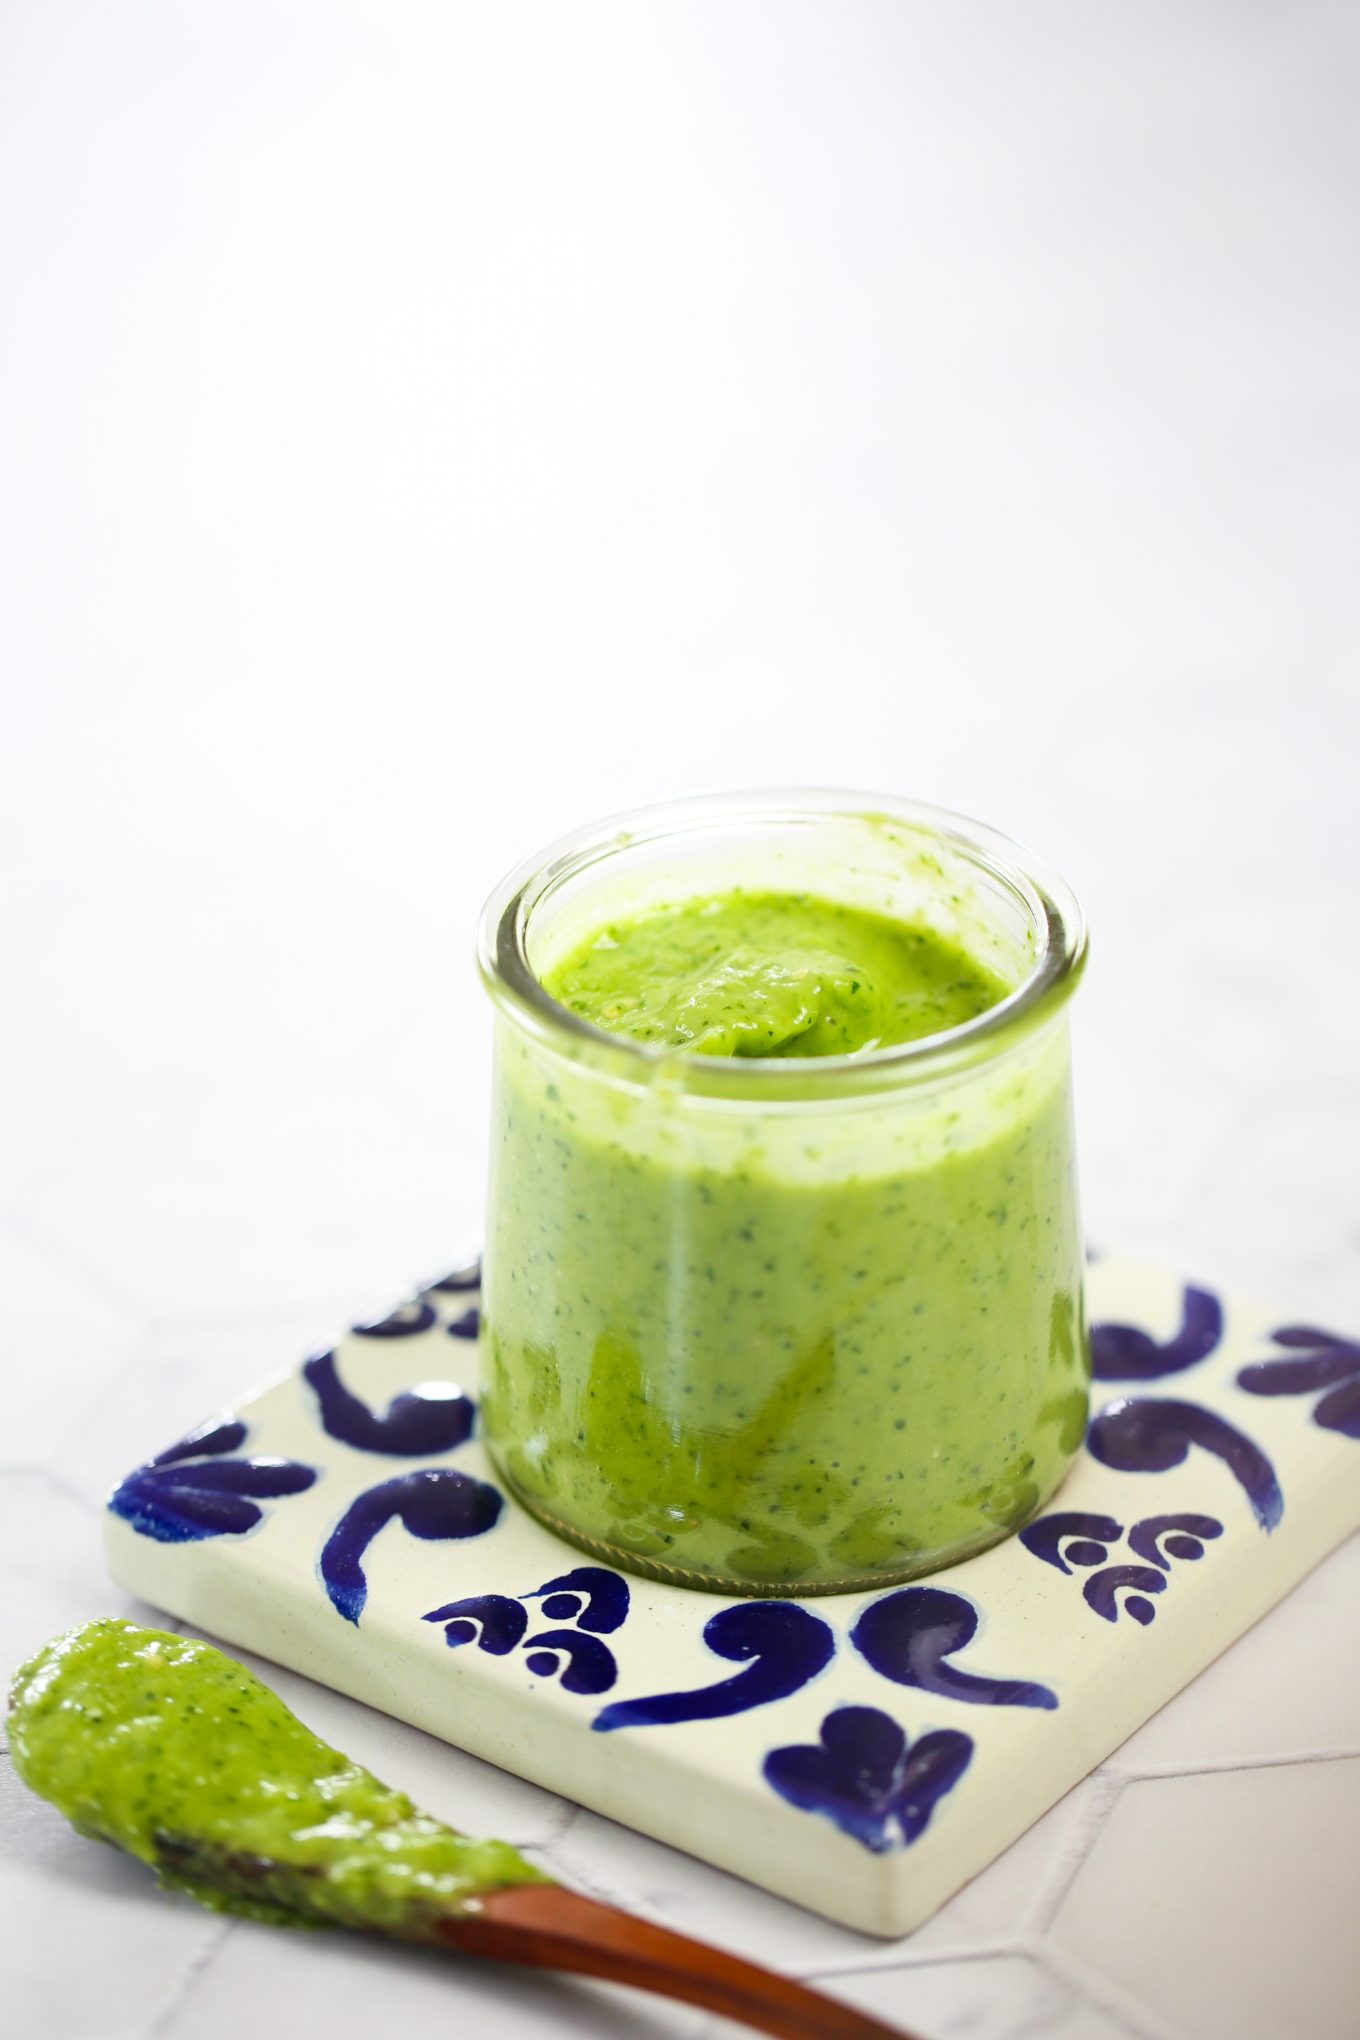 creamy salsa verde with avocado